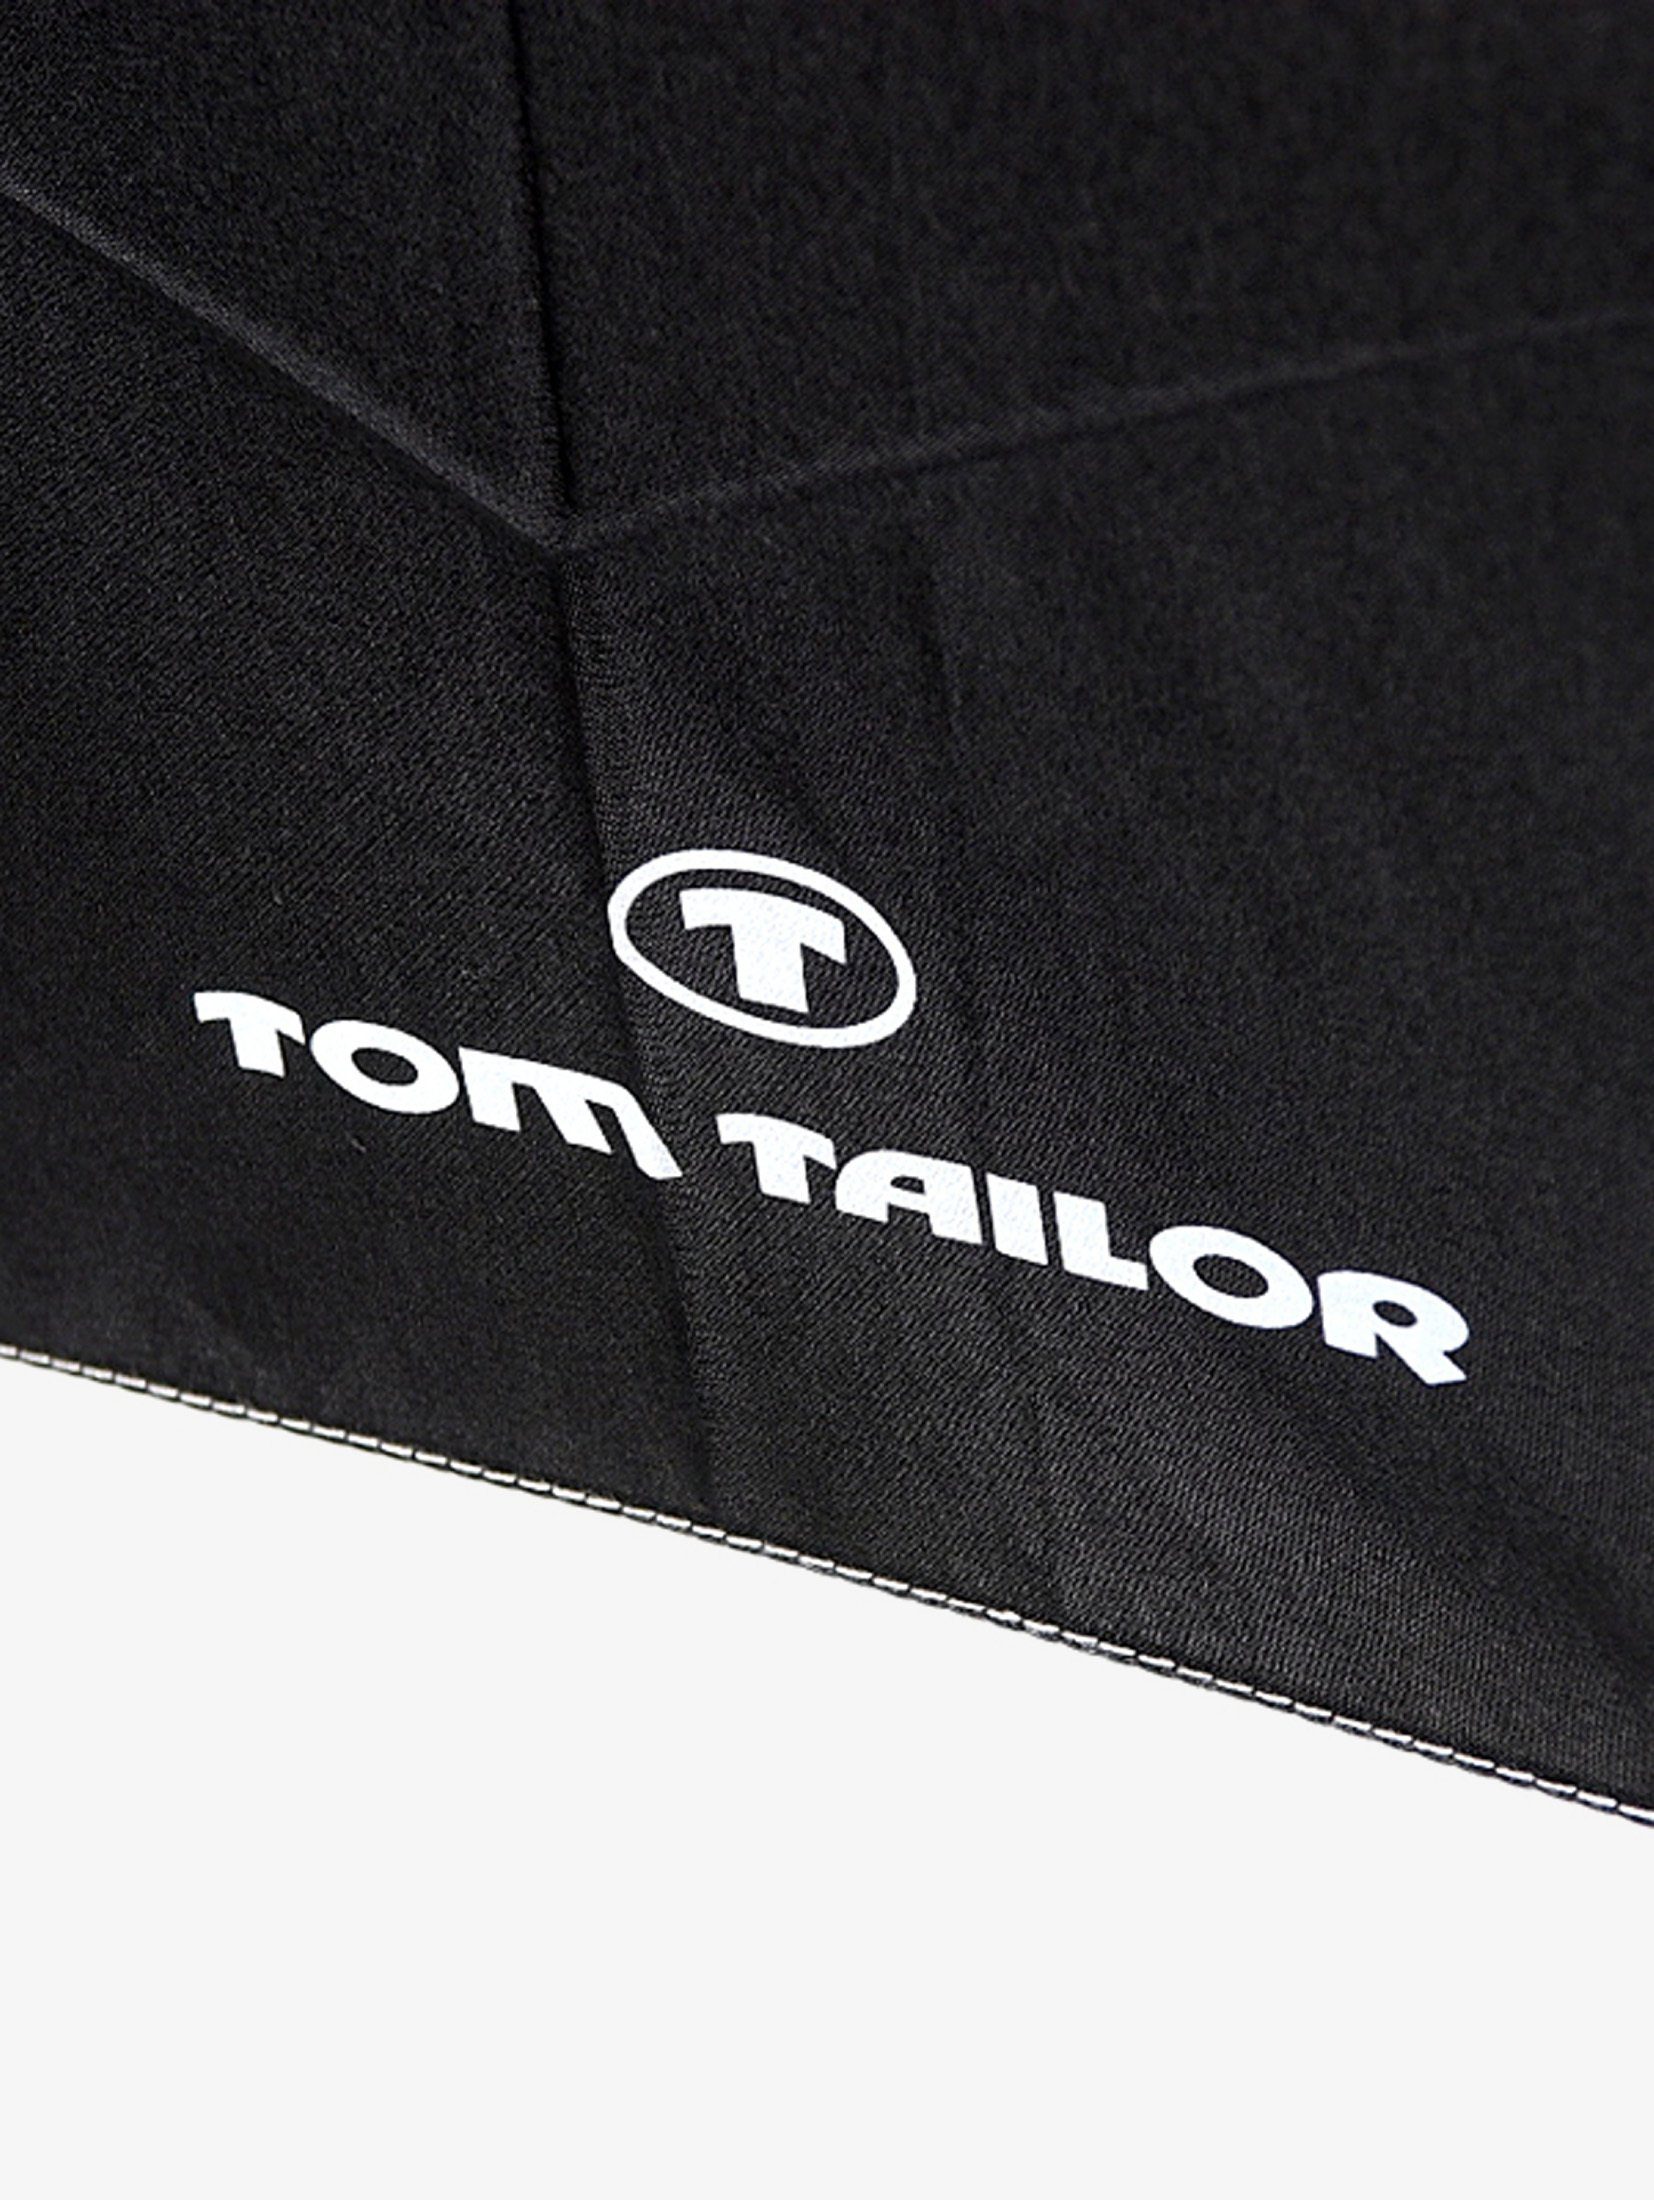 Taschenregenschirm TOM Taschenschirm Ultra black TAILOR mini